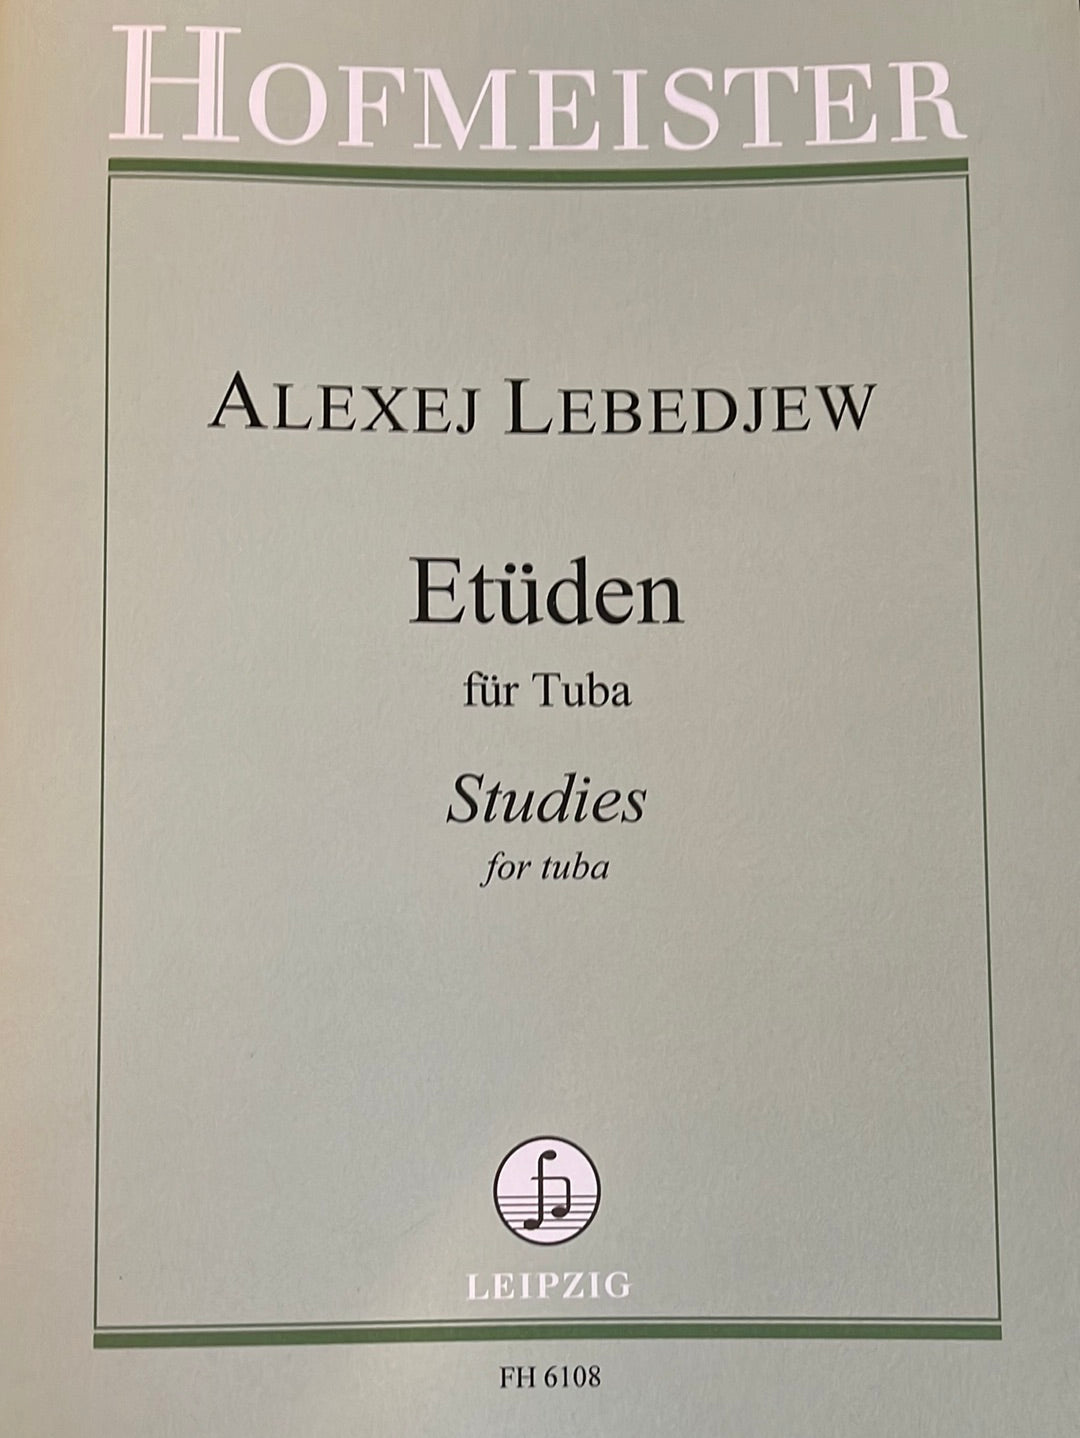 Lebedev, Alexander - Studies for Tuba